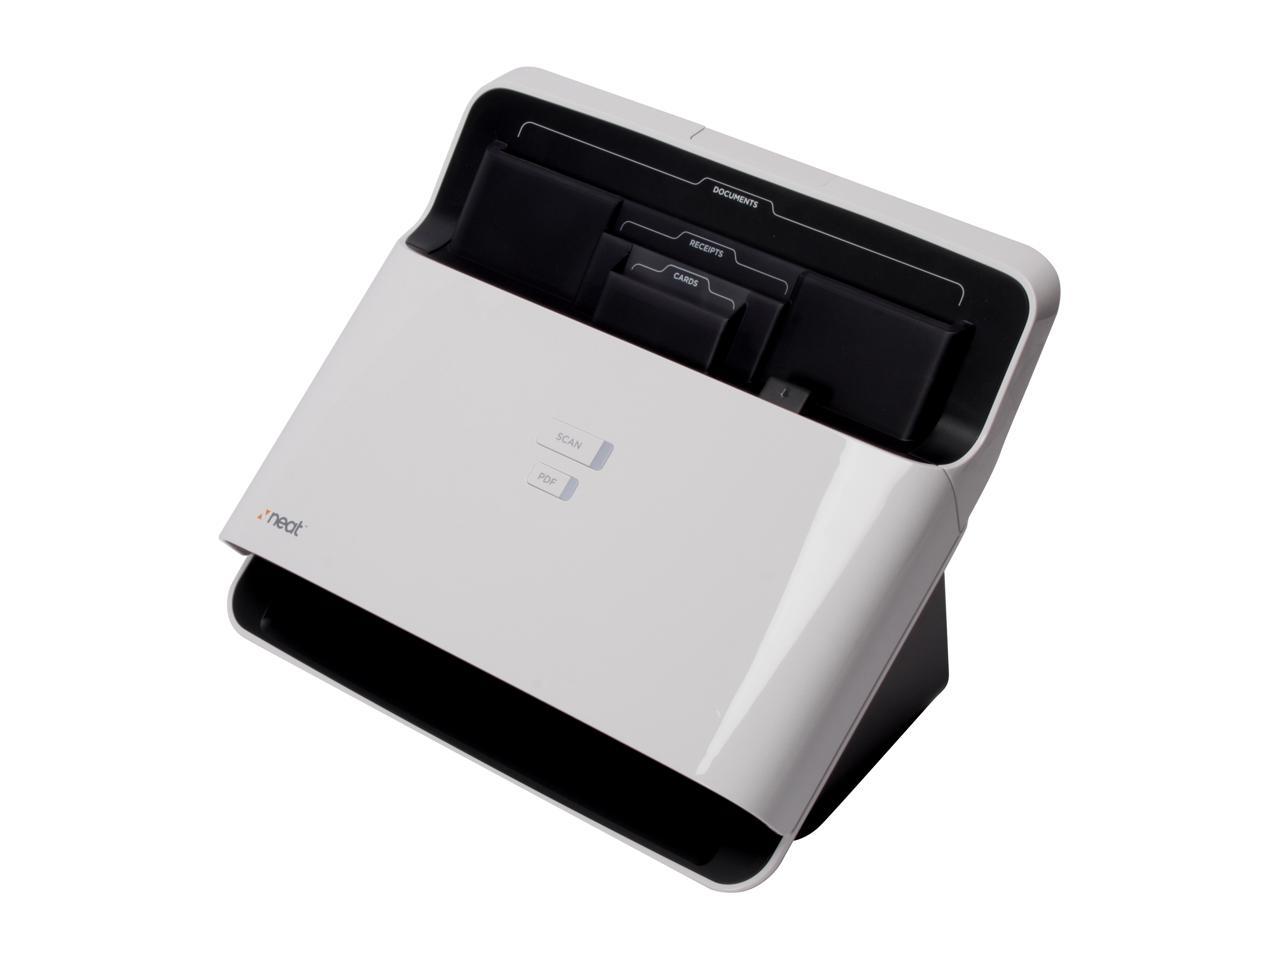 Neat Desk Desktop Scanner and Digital Filing System - PC - Newegg.com